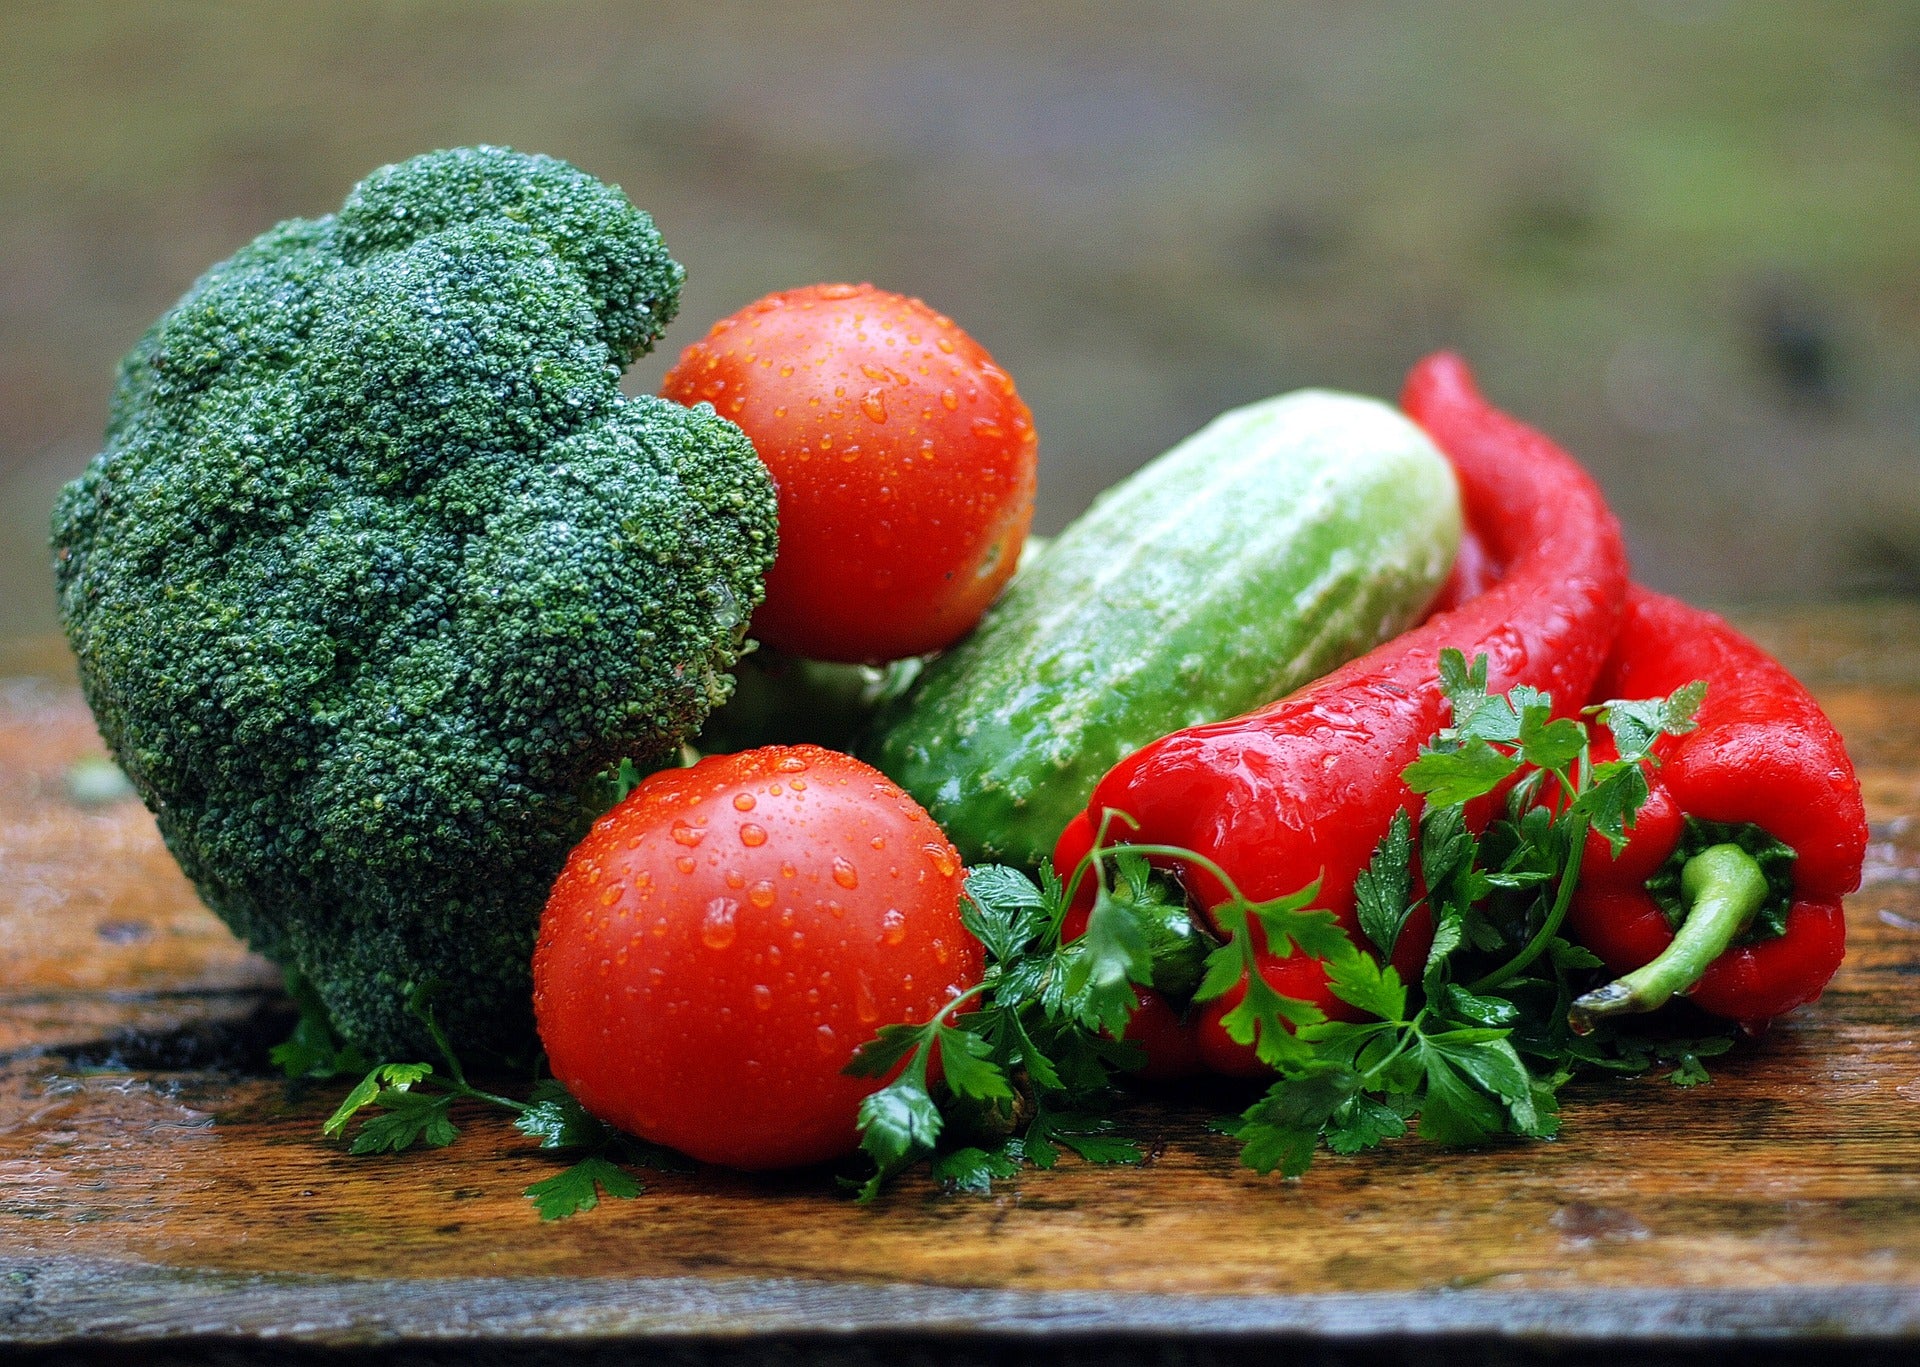 Afvallen met deze gezonde groenten - lees nu de feiten!